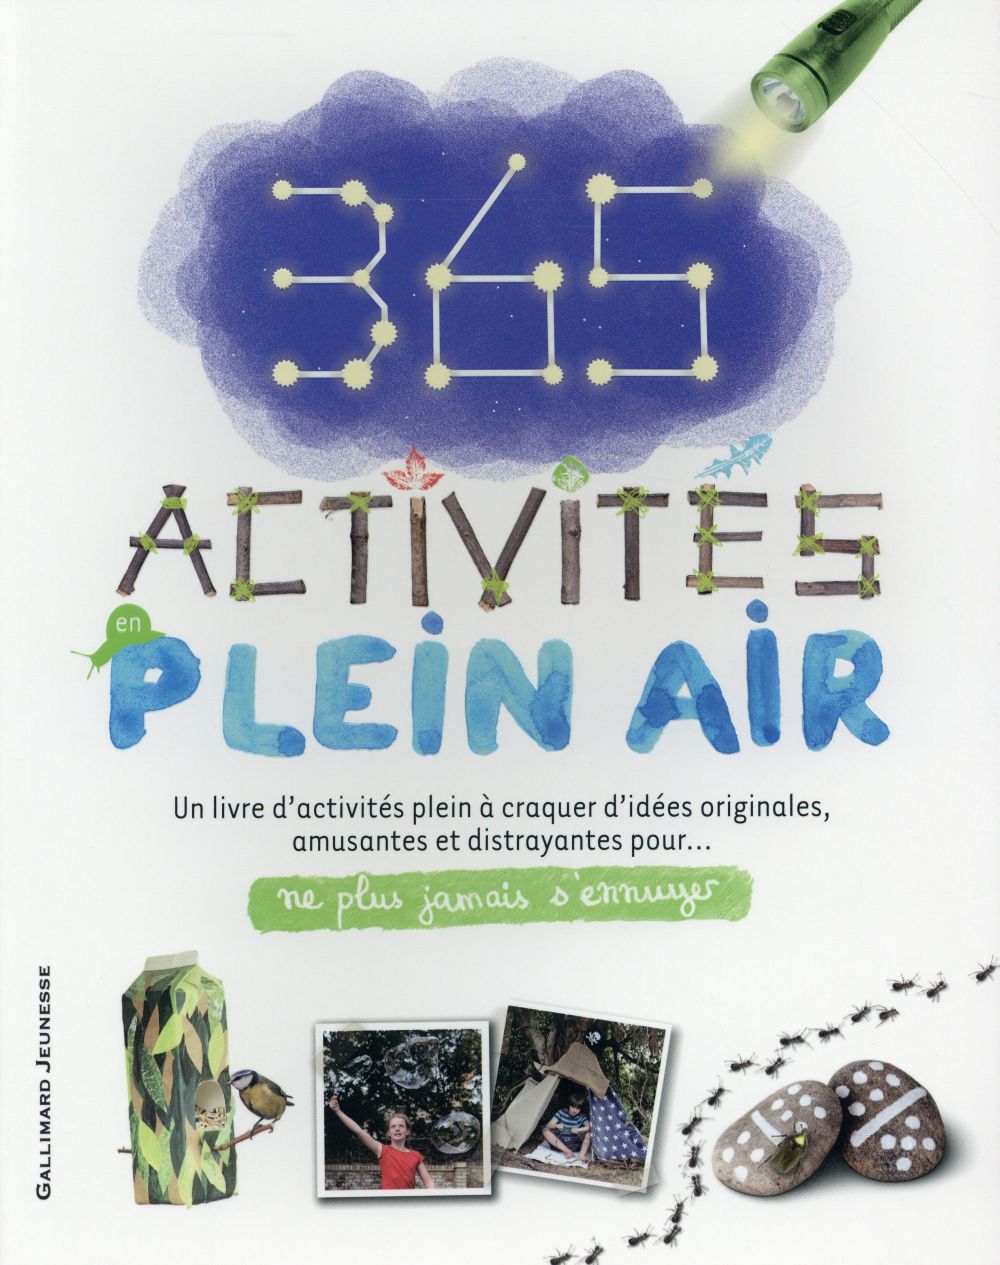 365 ACTIVITES EN PLEIN AIR